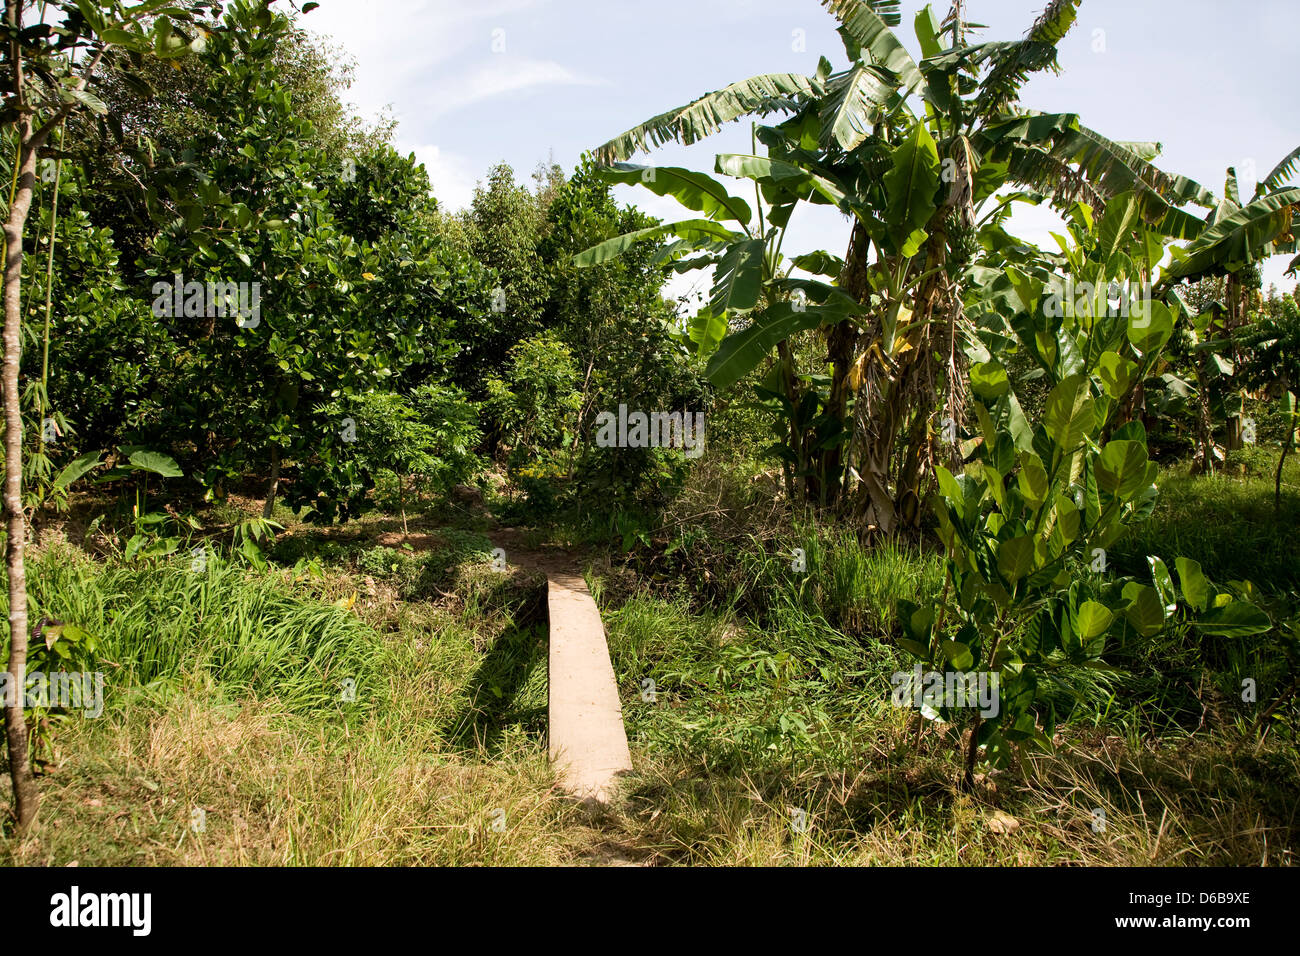 Fruit plantation Stock Photo